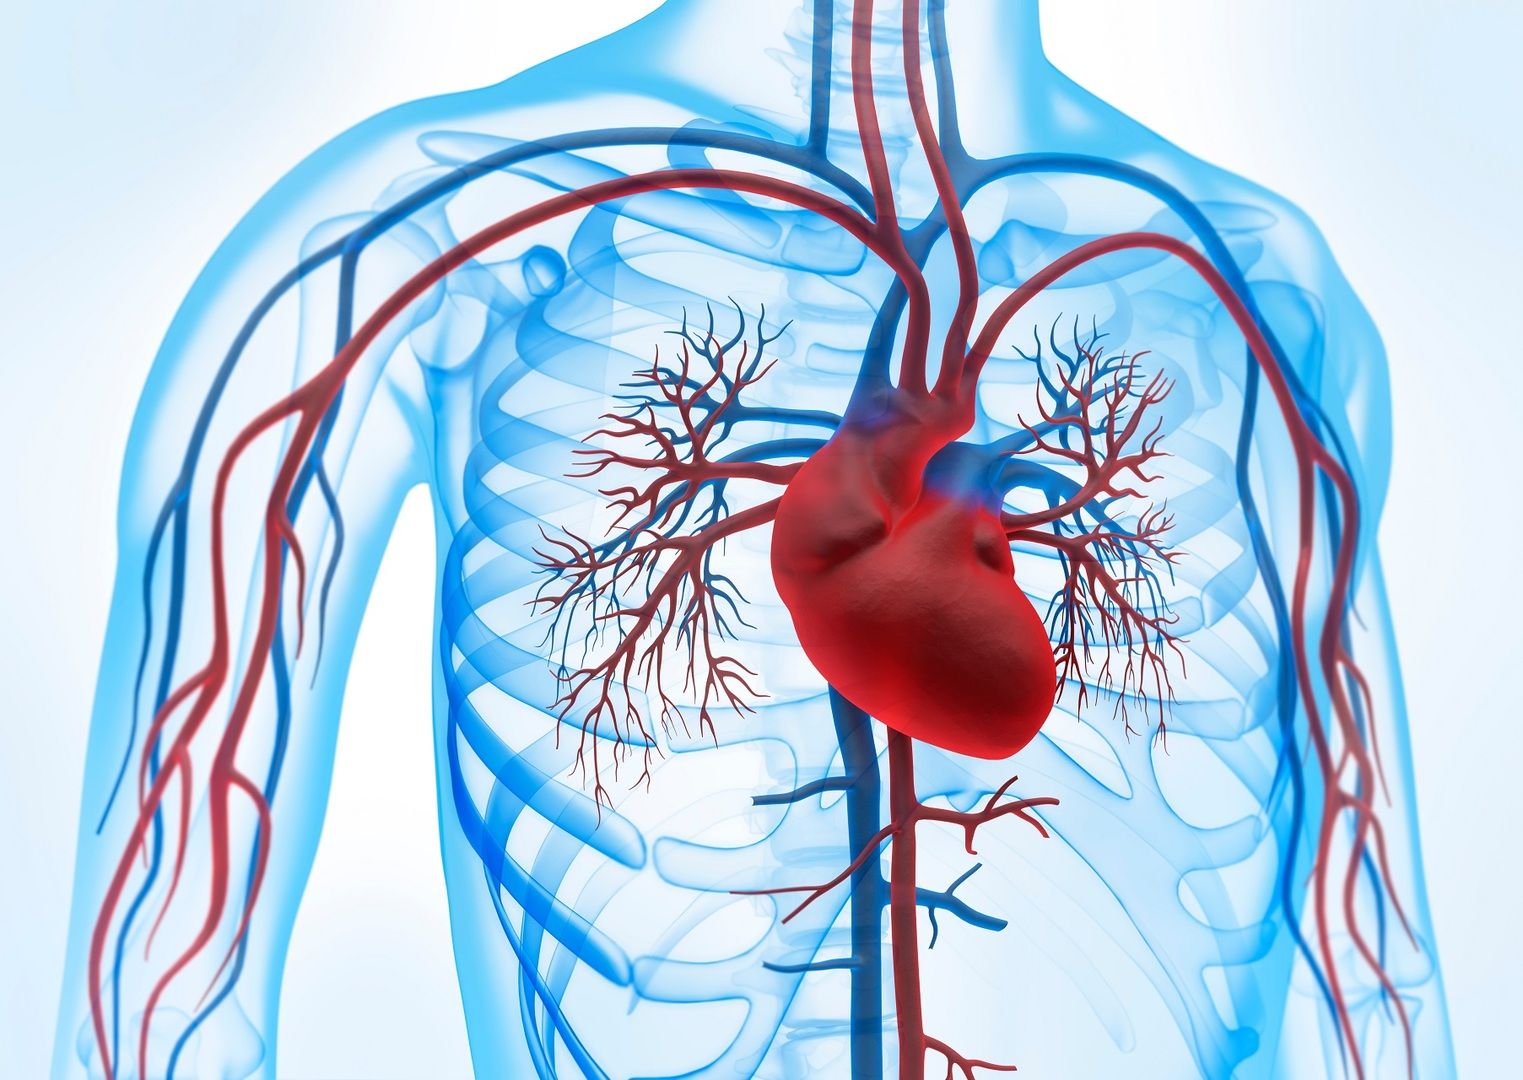 Circulação sanguínea e ilustração do coração - O nosso sistema cardiovascular é essencial para a nossa saúde. Mas como podemos prevenir a doença?